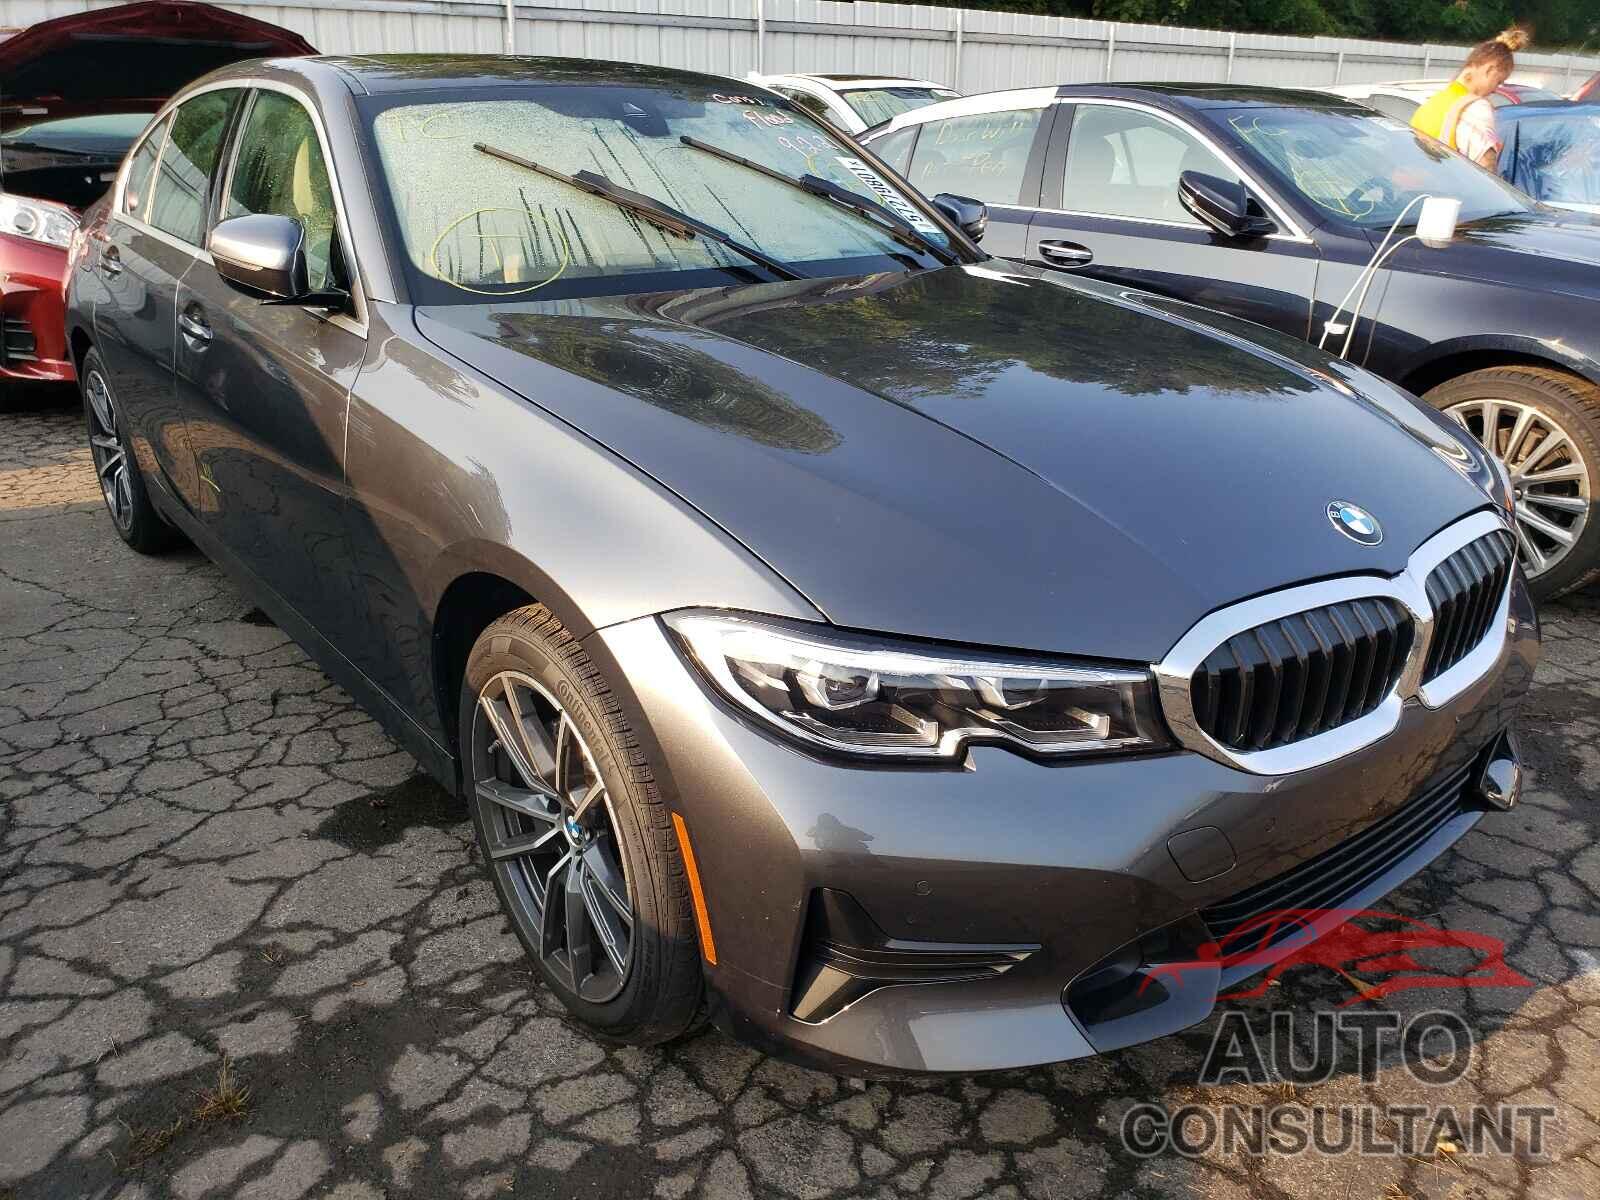 BMW 3 SERIES 2021 - 3MW5R7J03M8B68288